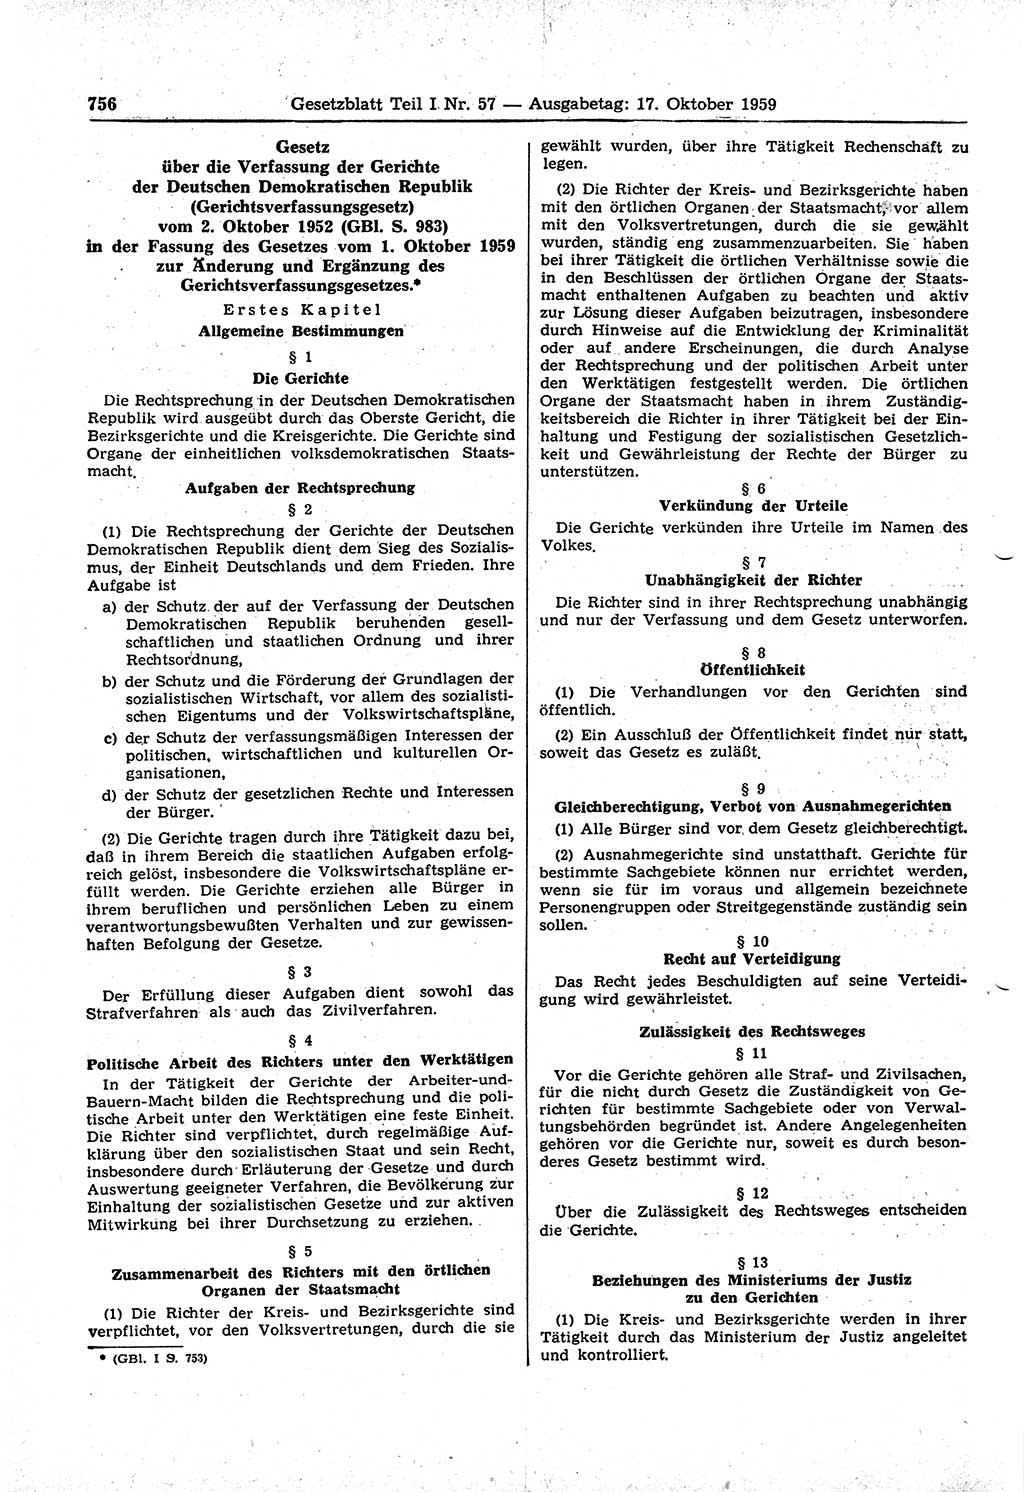 Gesetzblatt (GBl.) der Deutschen Demokratischen Republik (DDR) Teil Ⅰ 1959, Seite 756 (GBl. DDR Ⅰ 1959, S. 756)